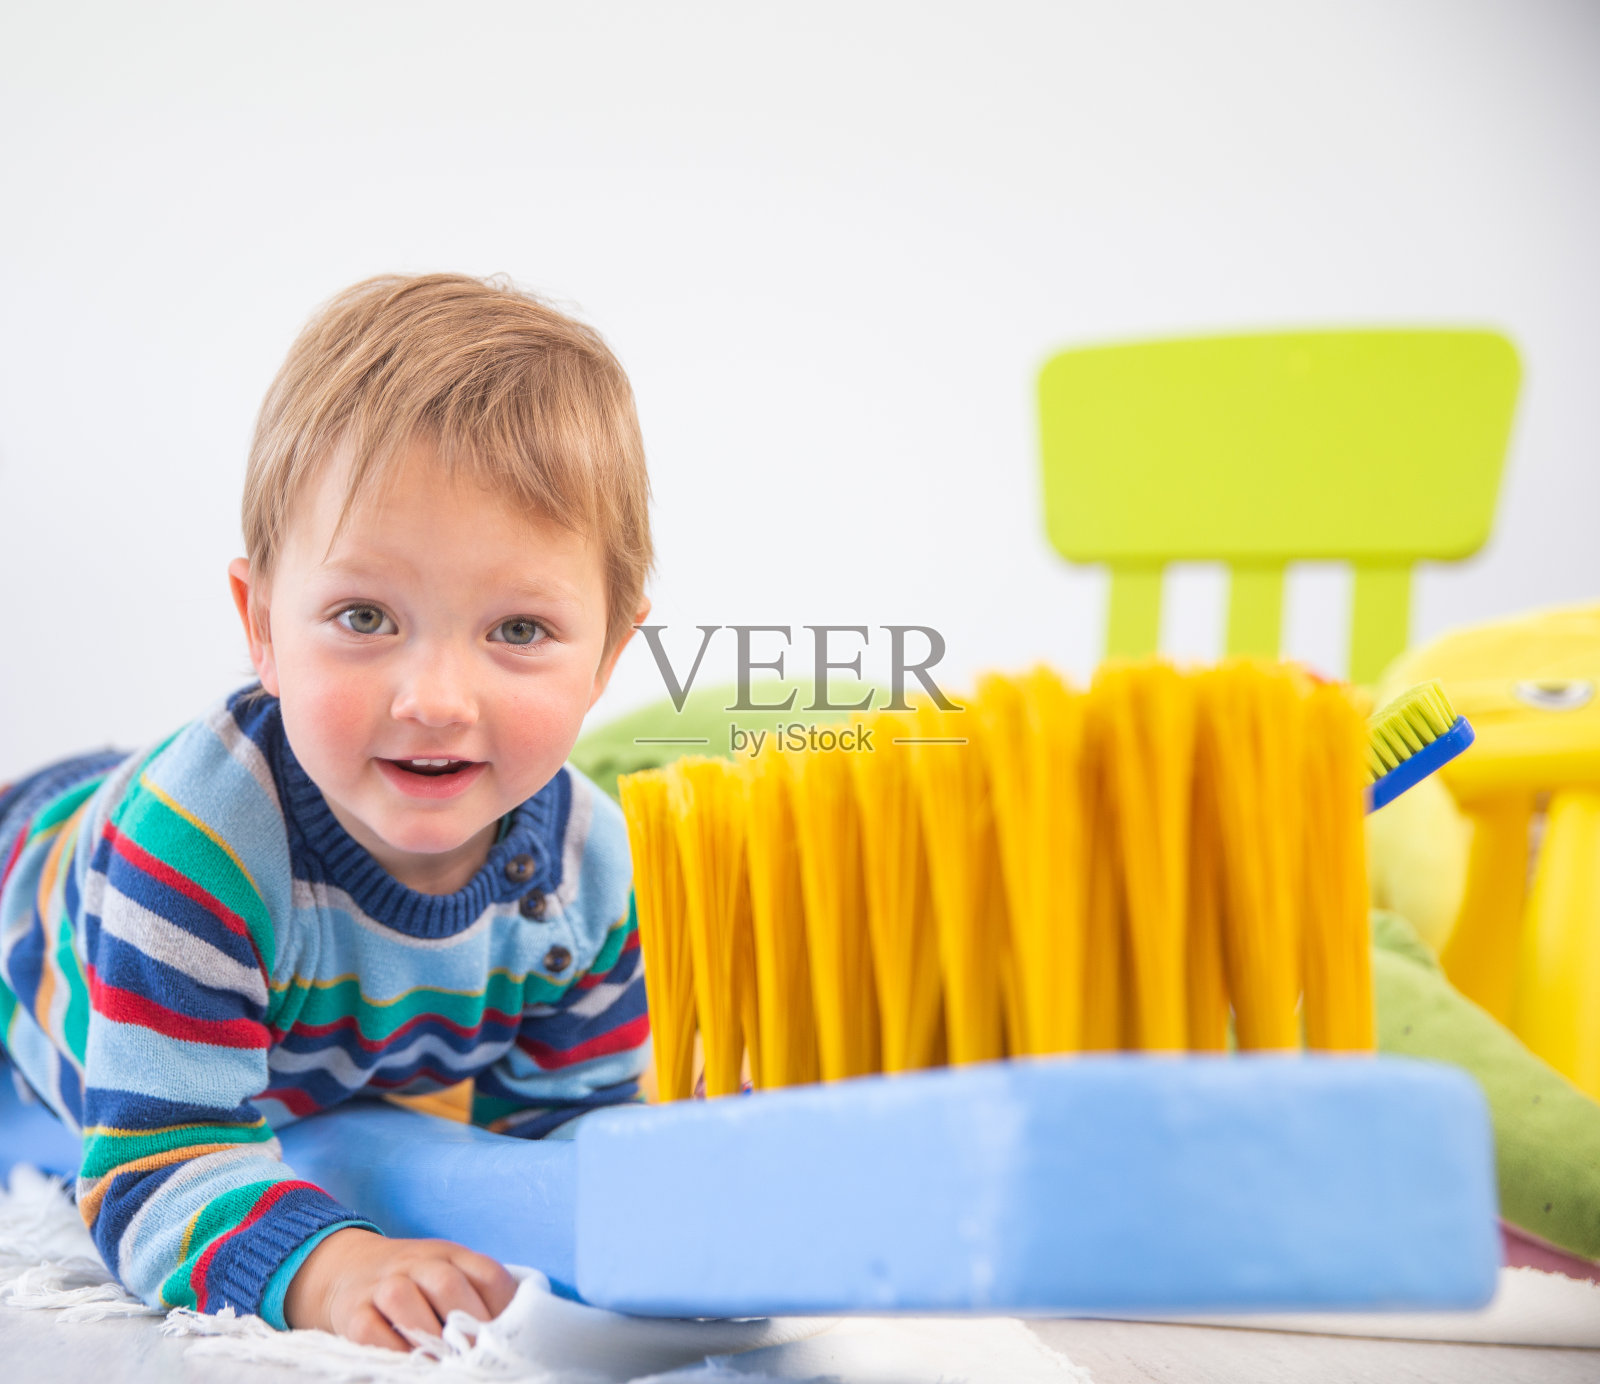 快乐的小男孩玩大牙刷复制品玩具看着相机在白色的背景-库存照片照片摄影图片